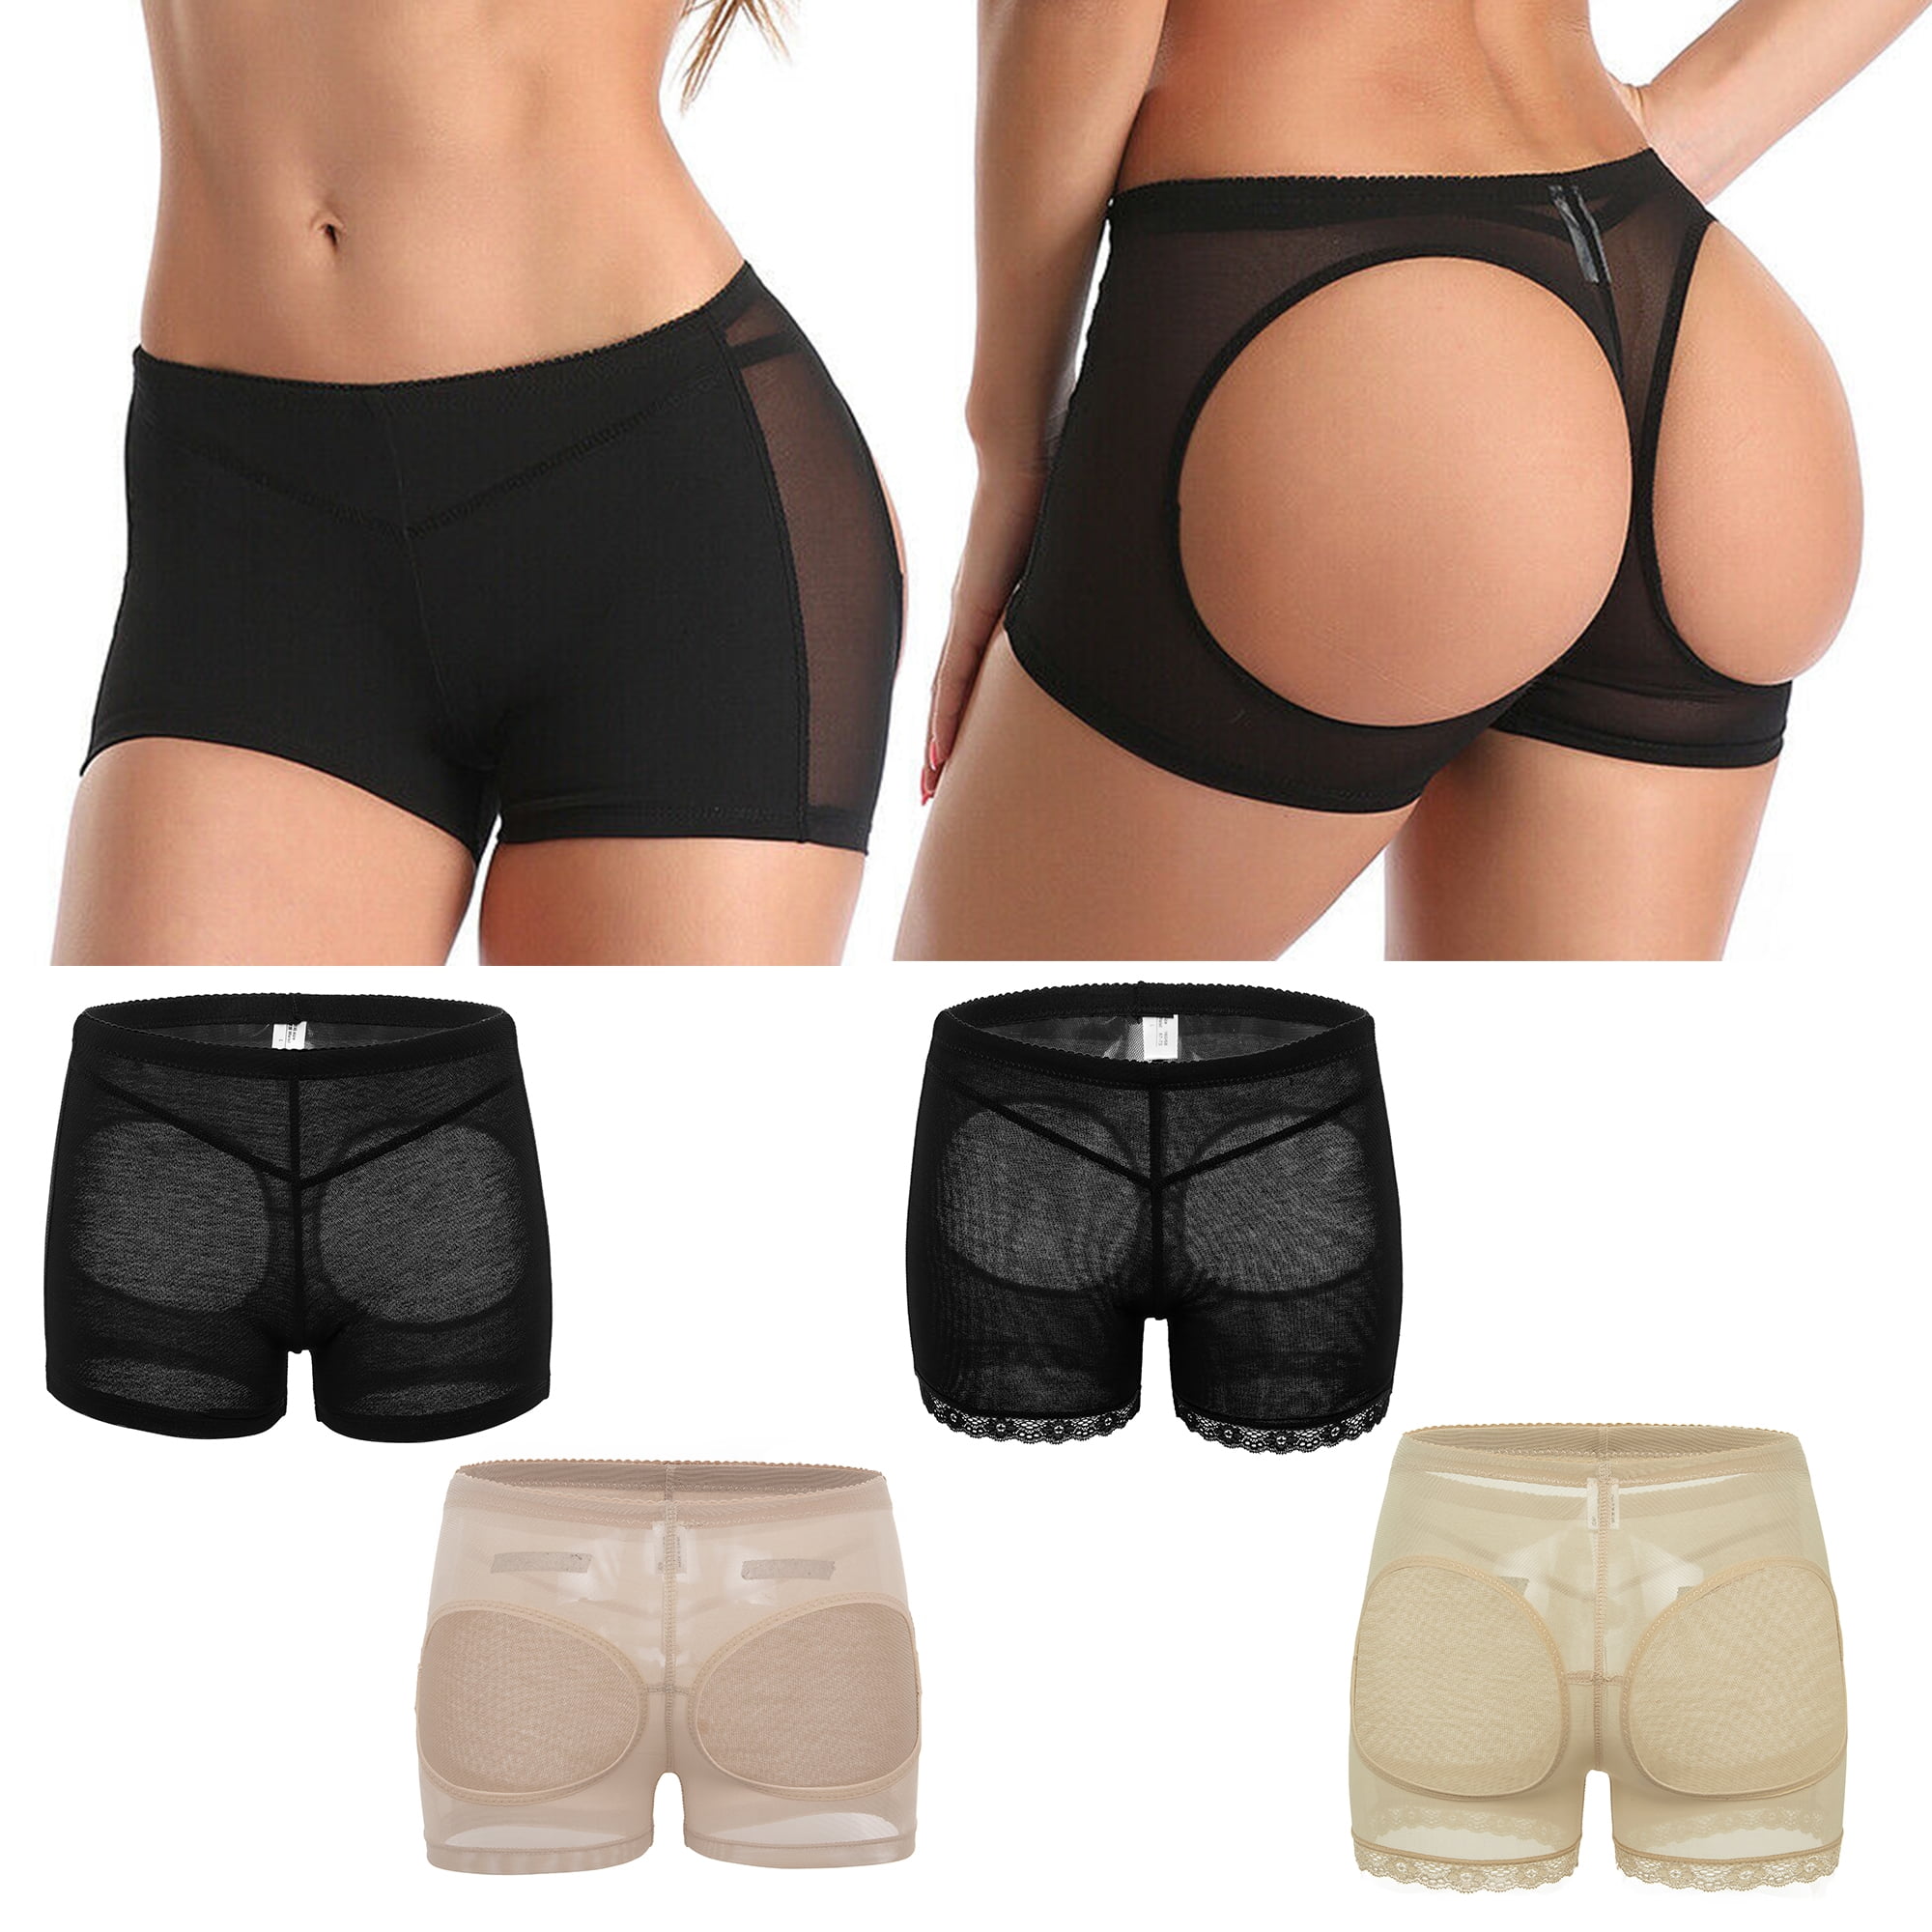 Elastic Women High Waist Butt Lift Body Shaper Panty Underwear Seamless Butt  Lift Panties, Black, L 